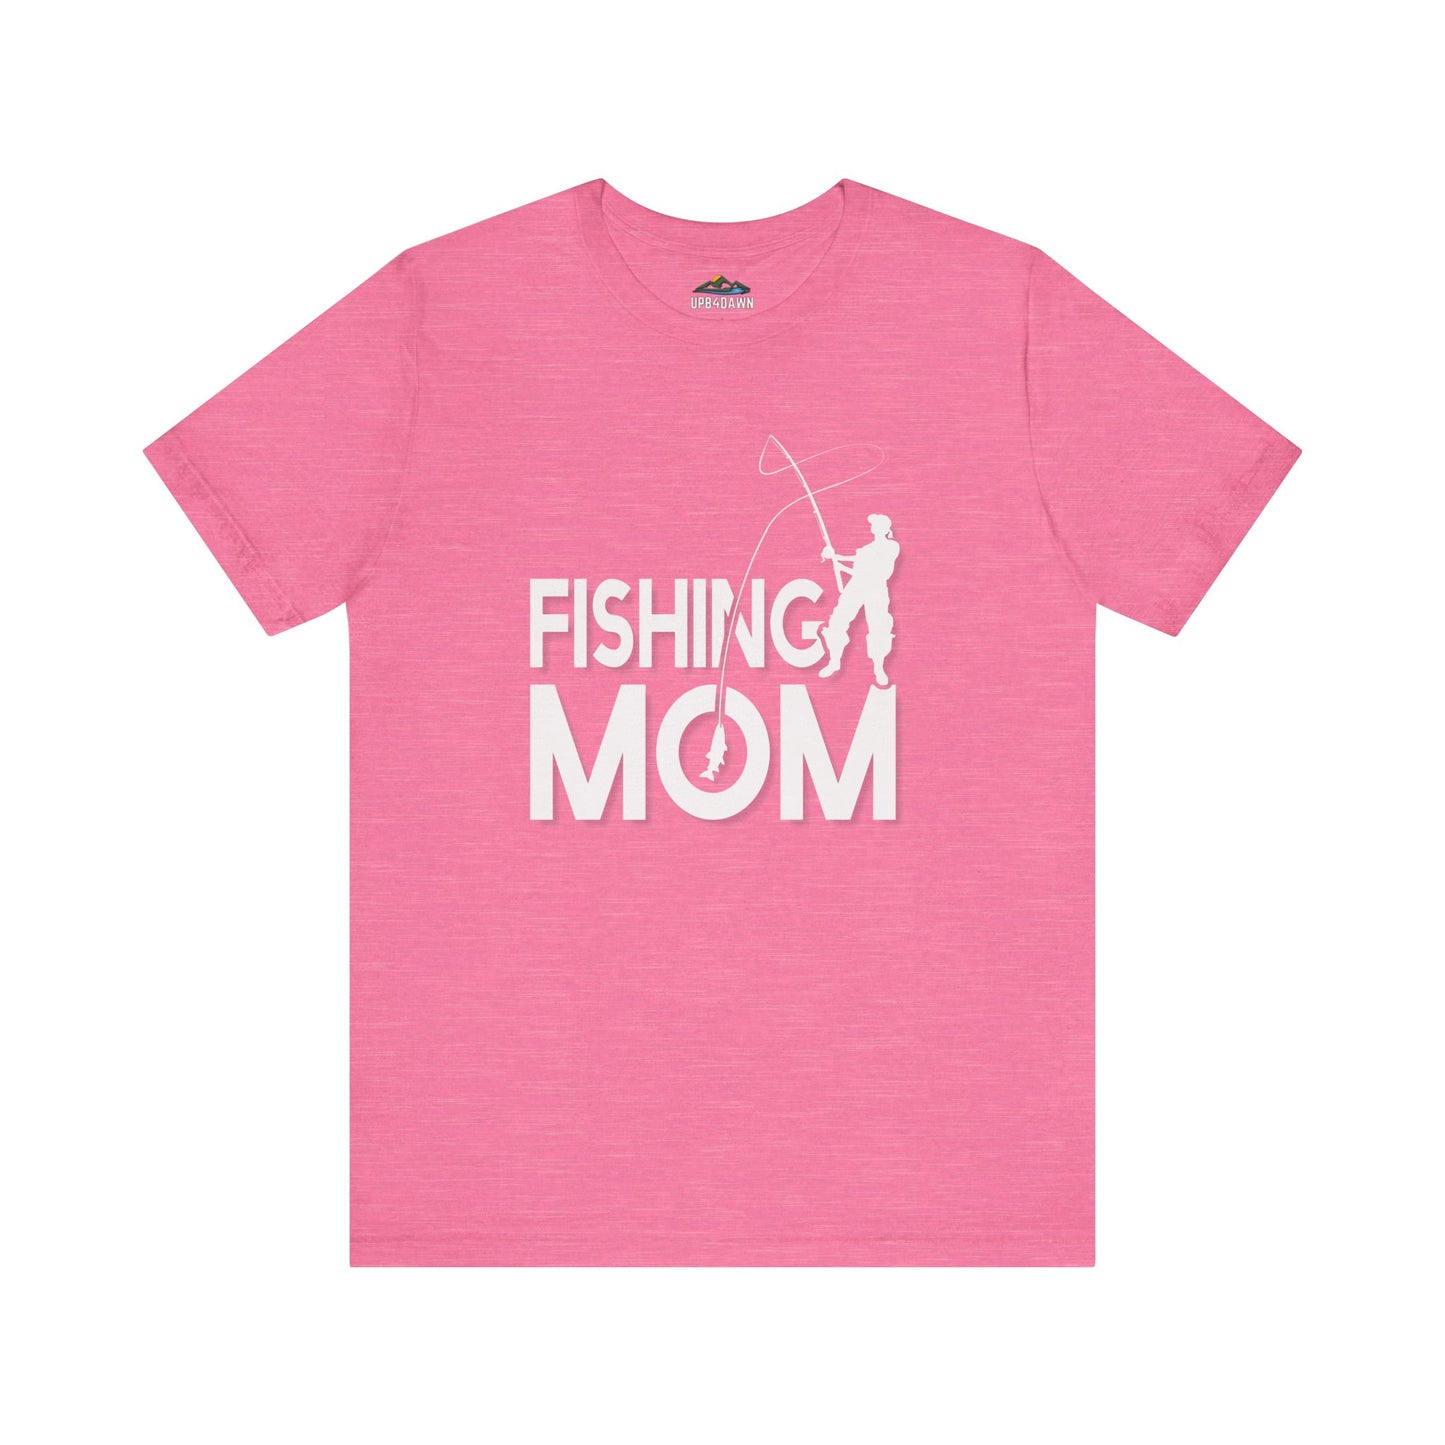 Fishing Mom - T-Shirt